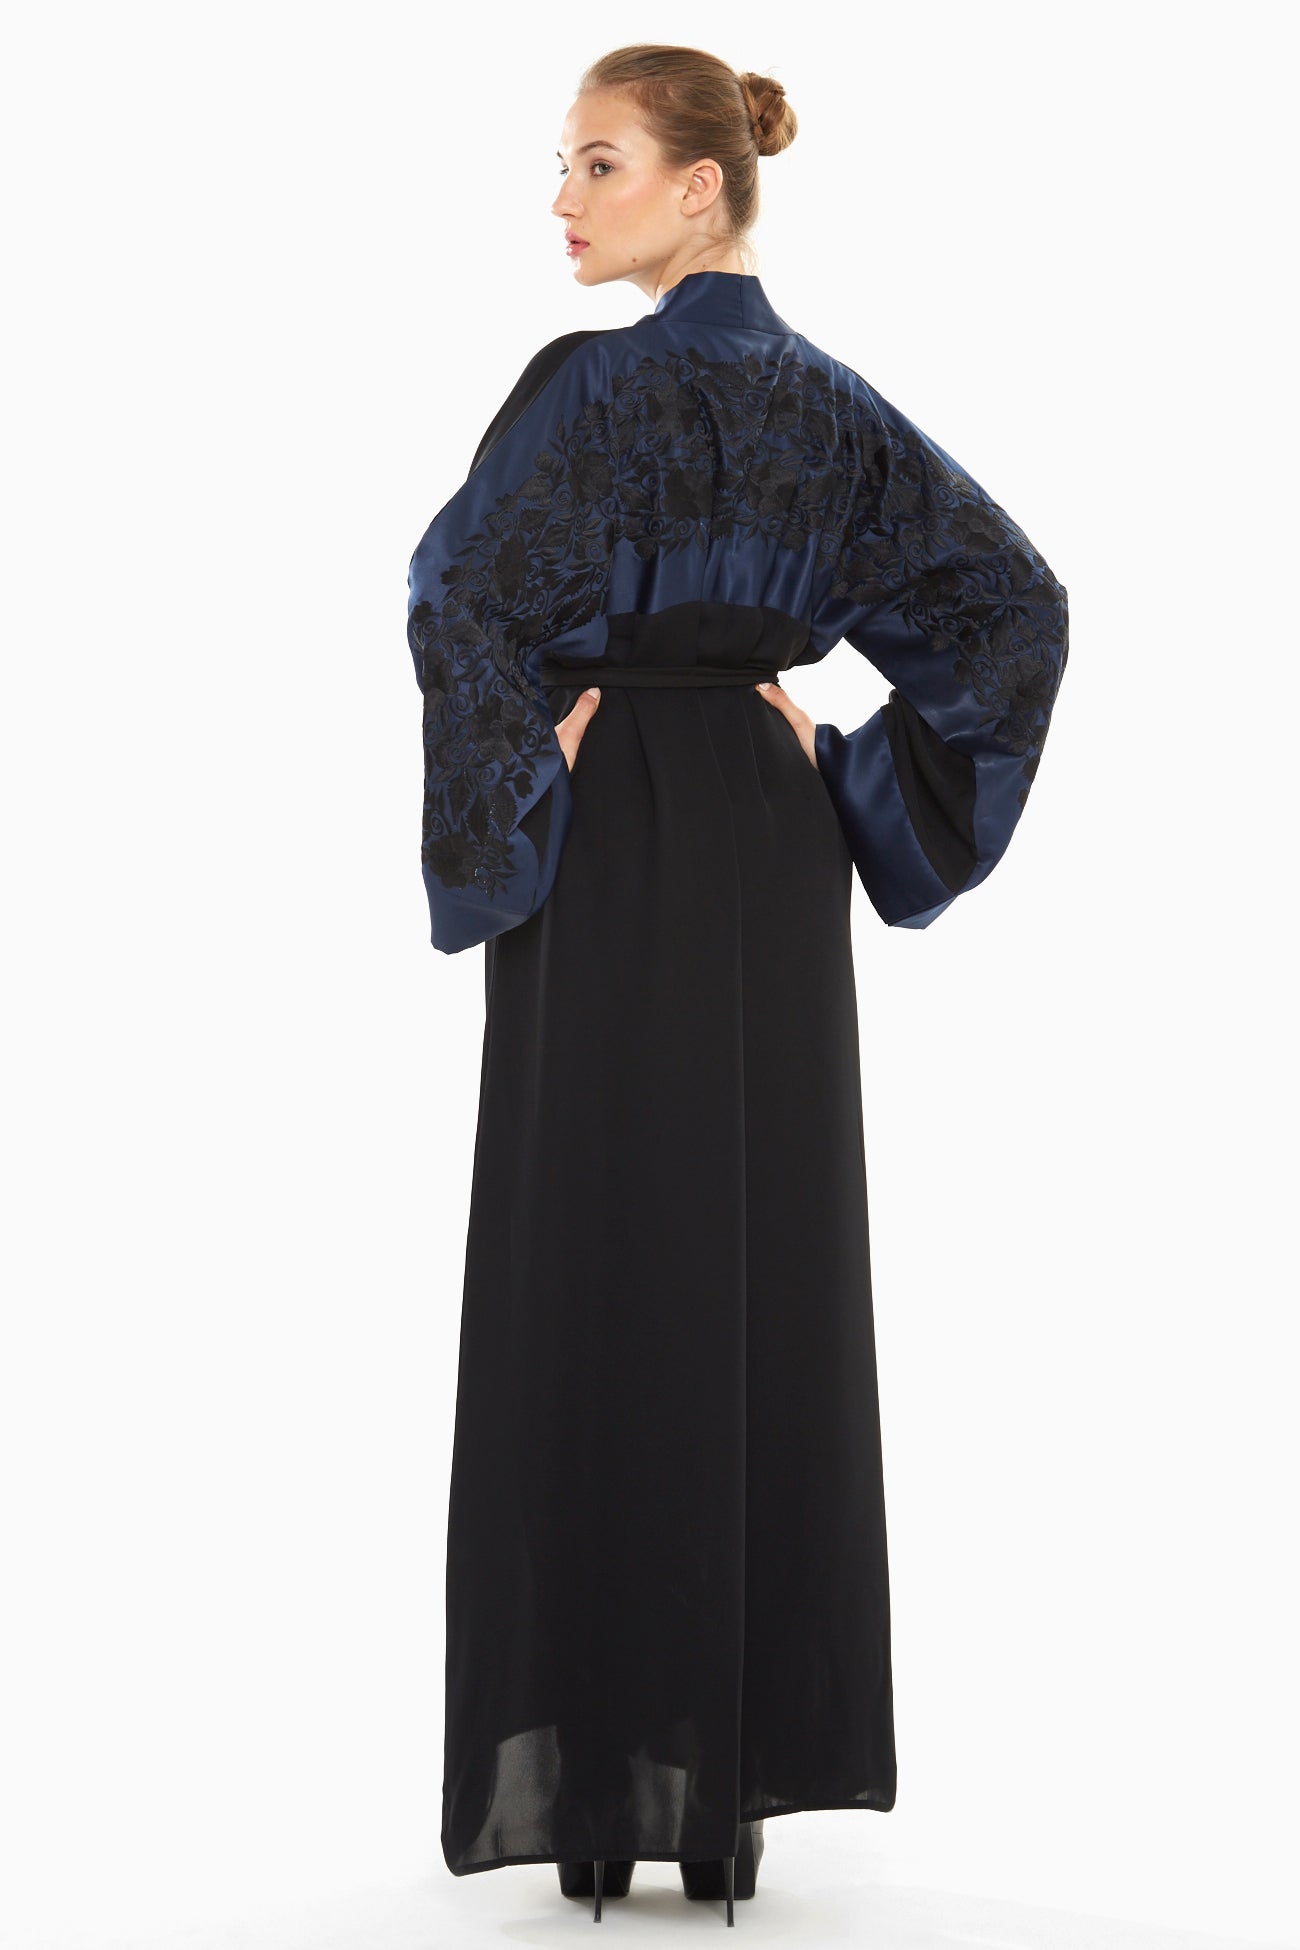 Dubai-made Nukhbaa brand Abaya a reflection of Dubai's luxury fashion scene-SQ294A